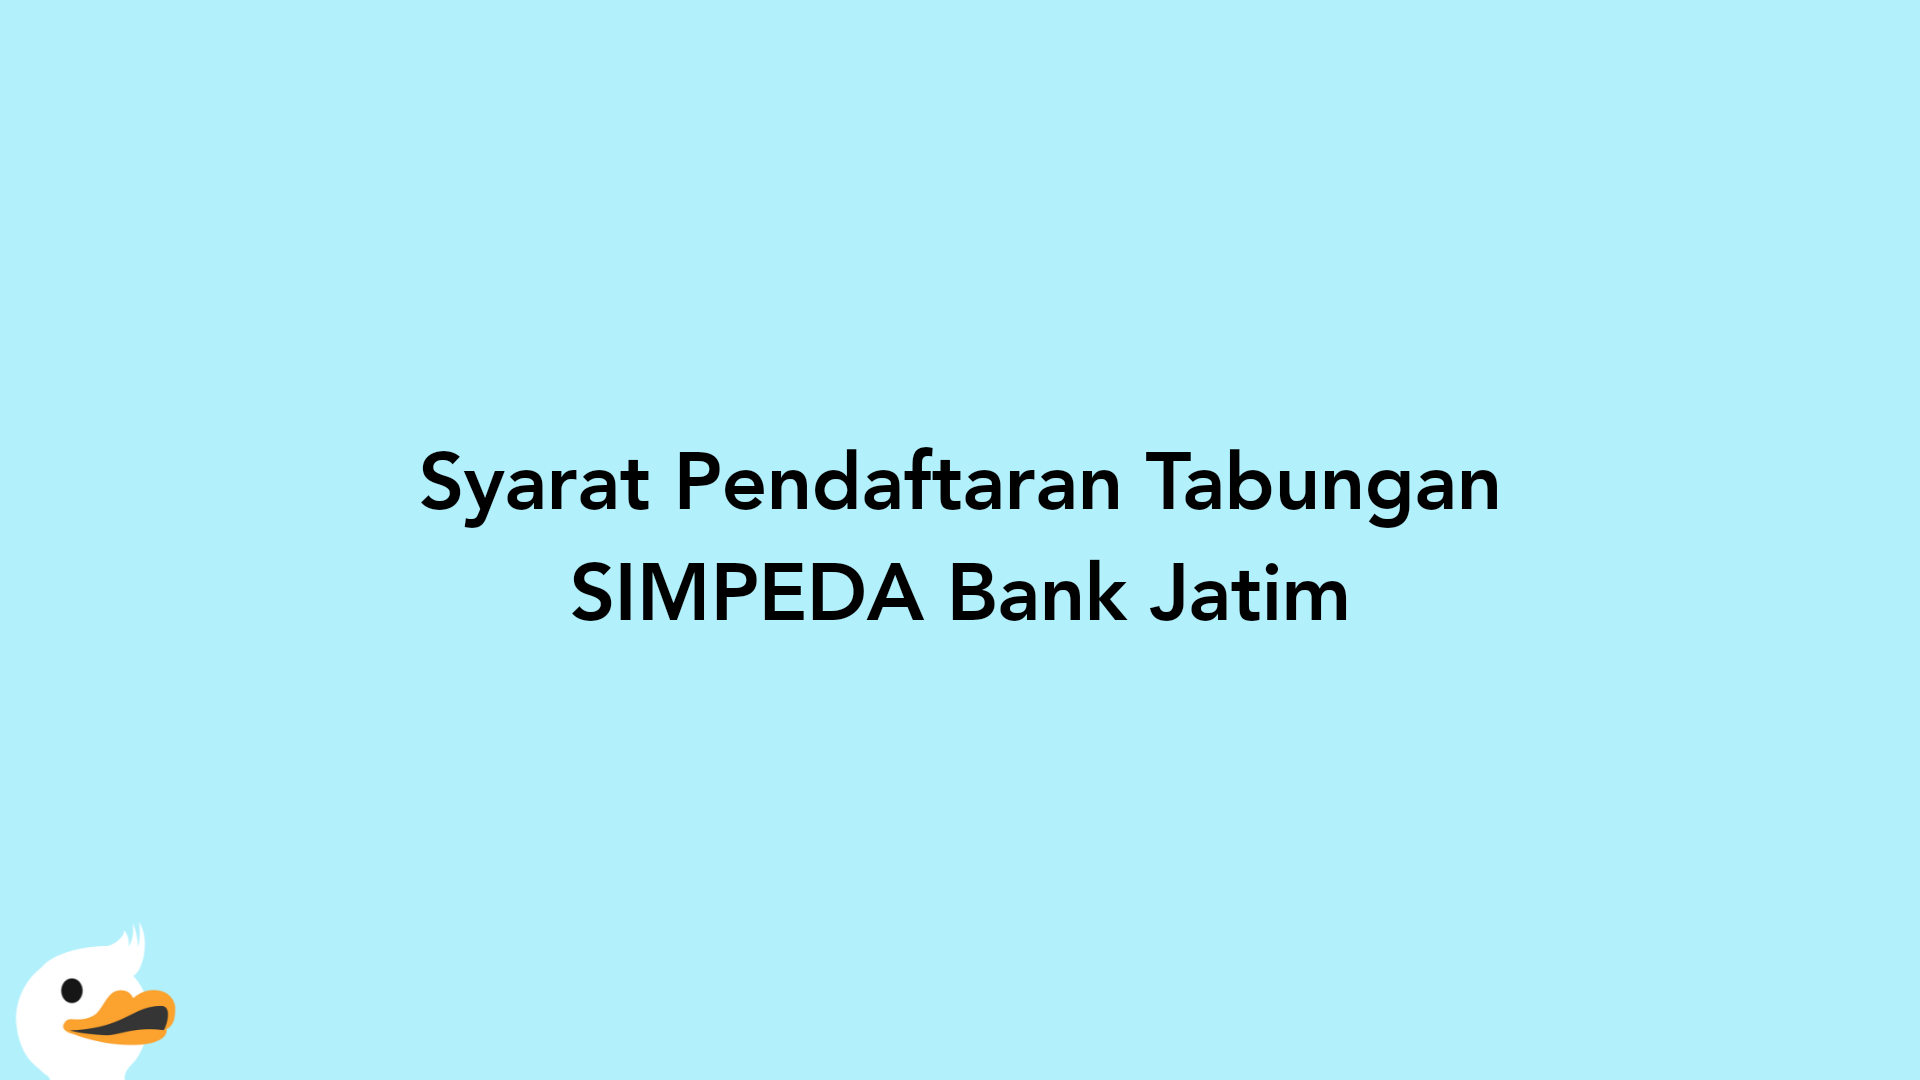 Syarat Pendaftaran Tabungan SIMPEDA Bank Jatim